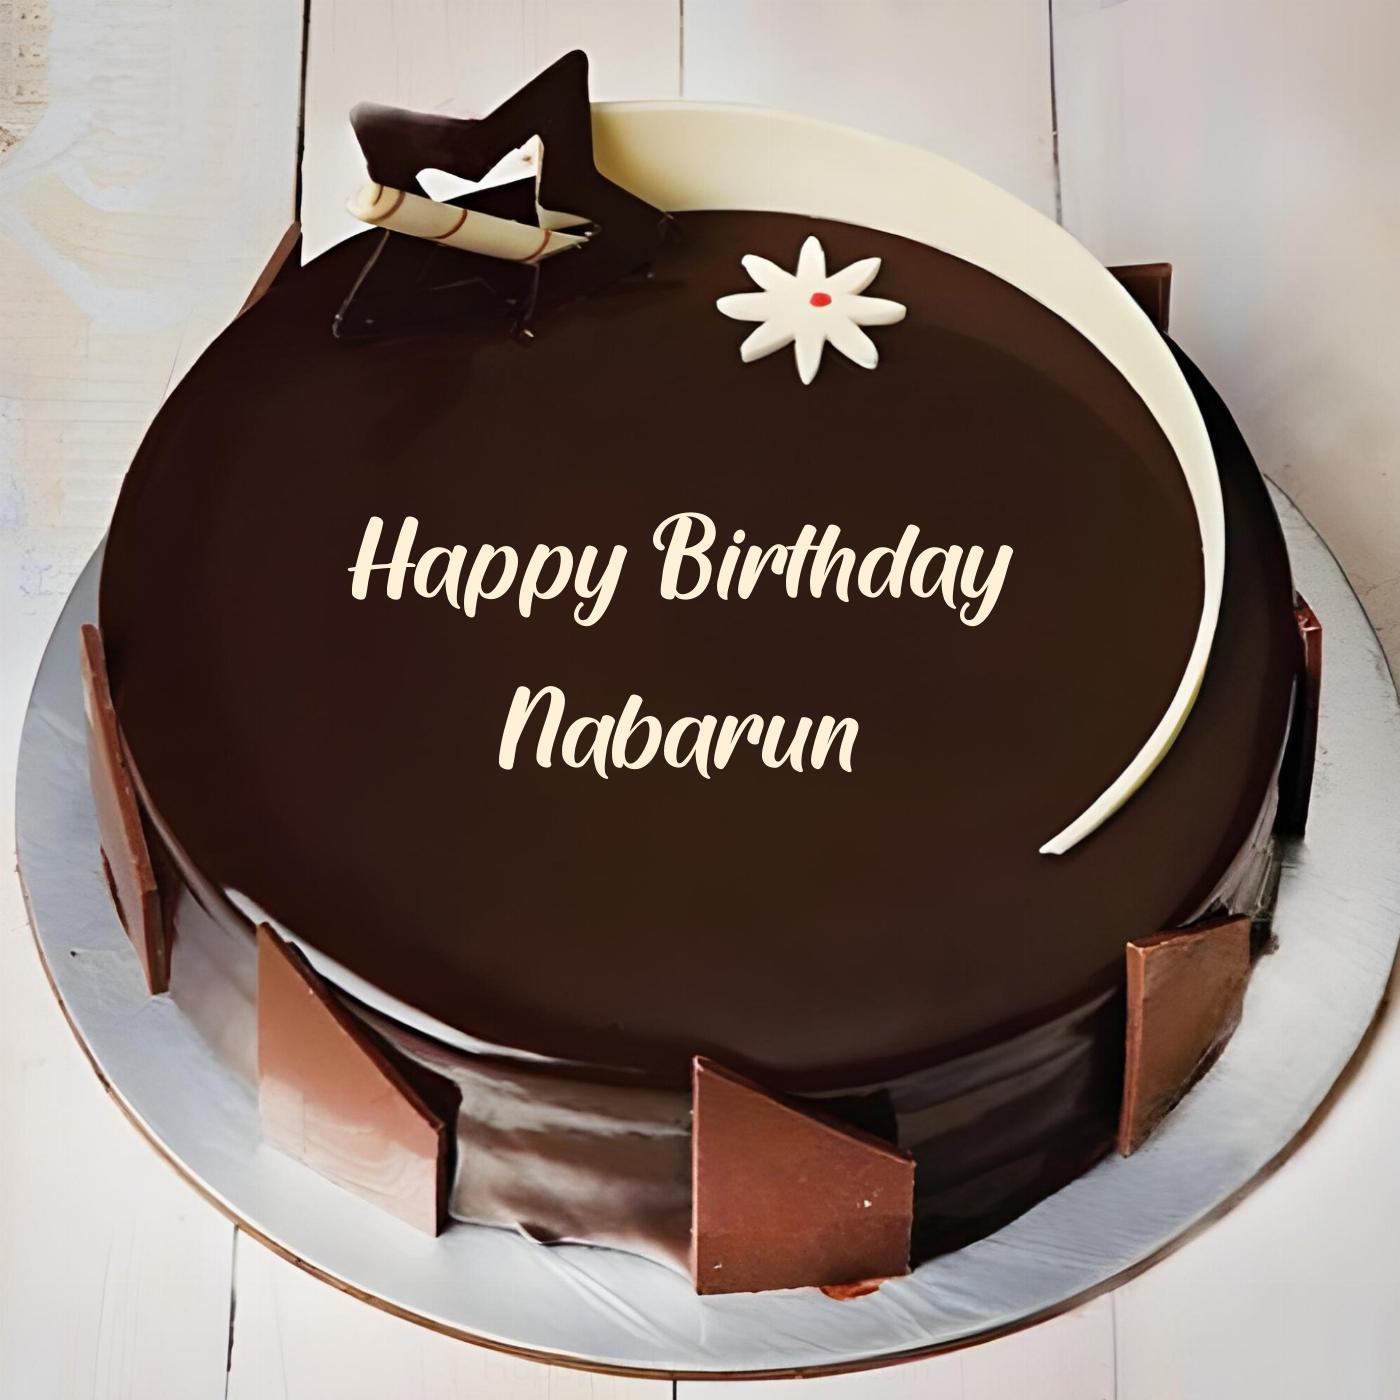 Happy Birthday Nabarun Chocolate Star Cake